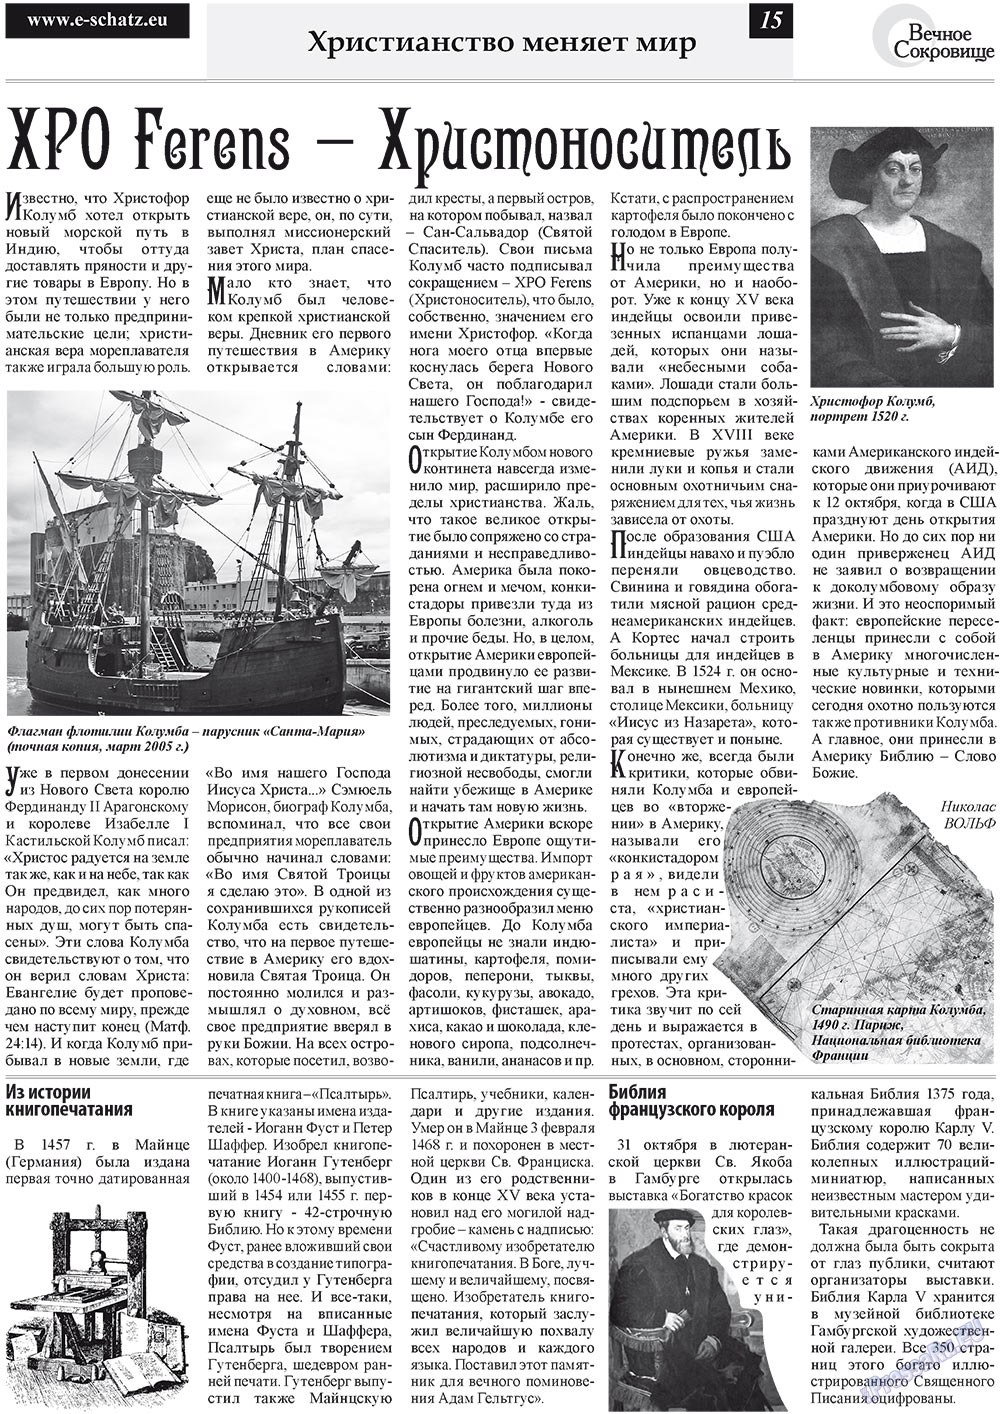 Вечное сокровище (газета). 2010 год, номер 4, стр. 15